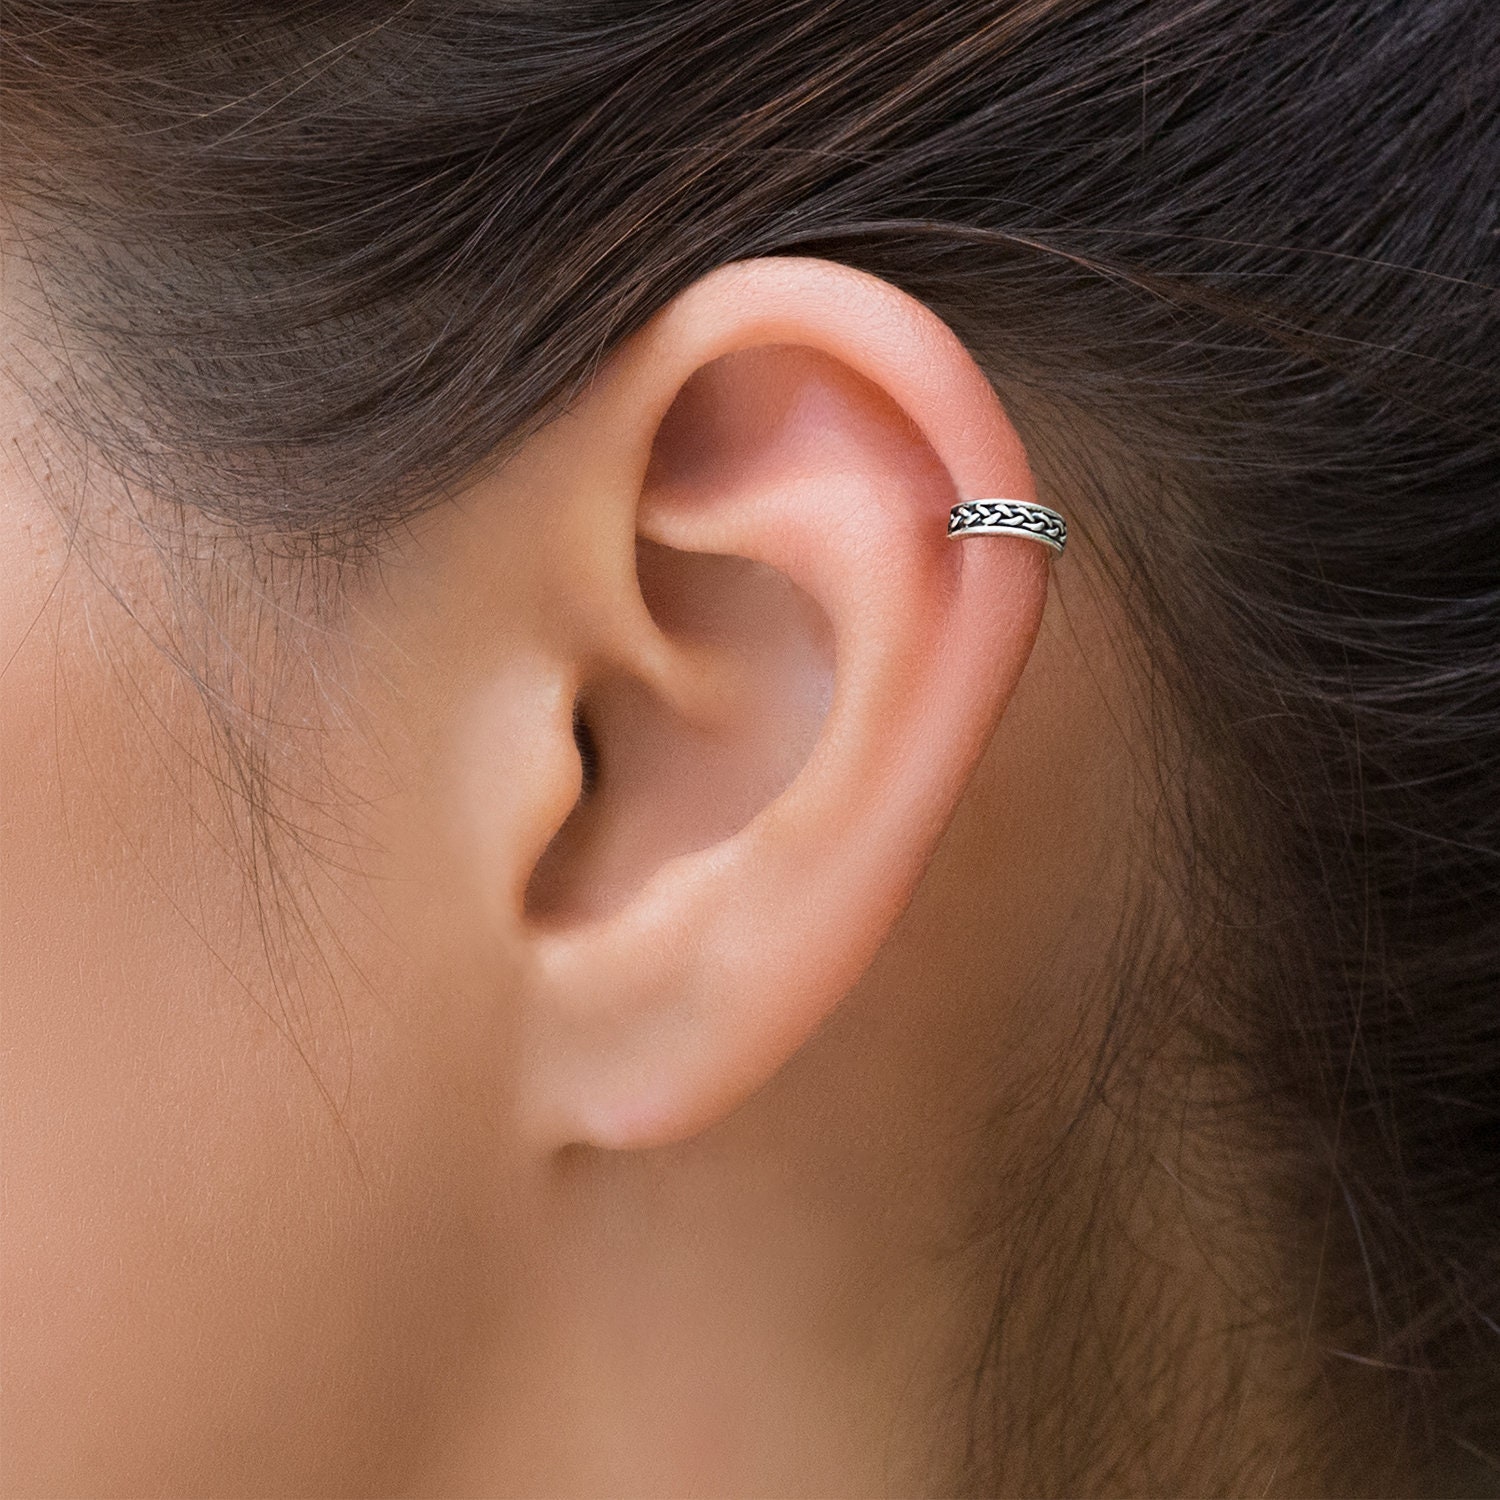 NEW* Dragon Upper Ear, Daith,Cartilage,Helix,tragus Earring Ring Cuff | eBay